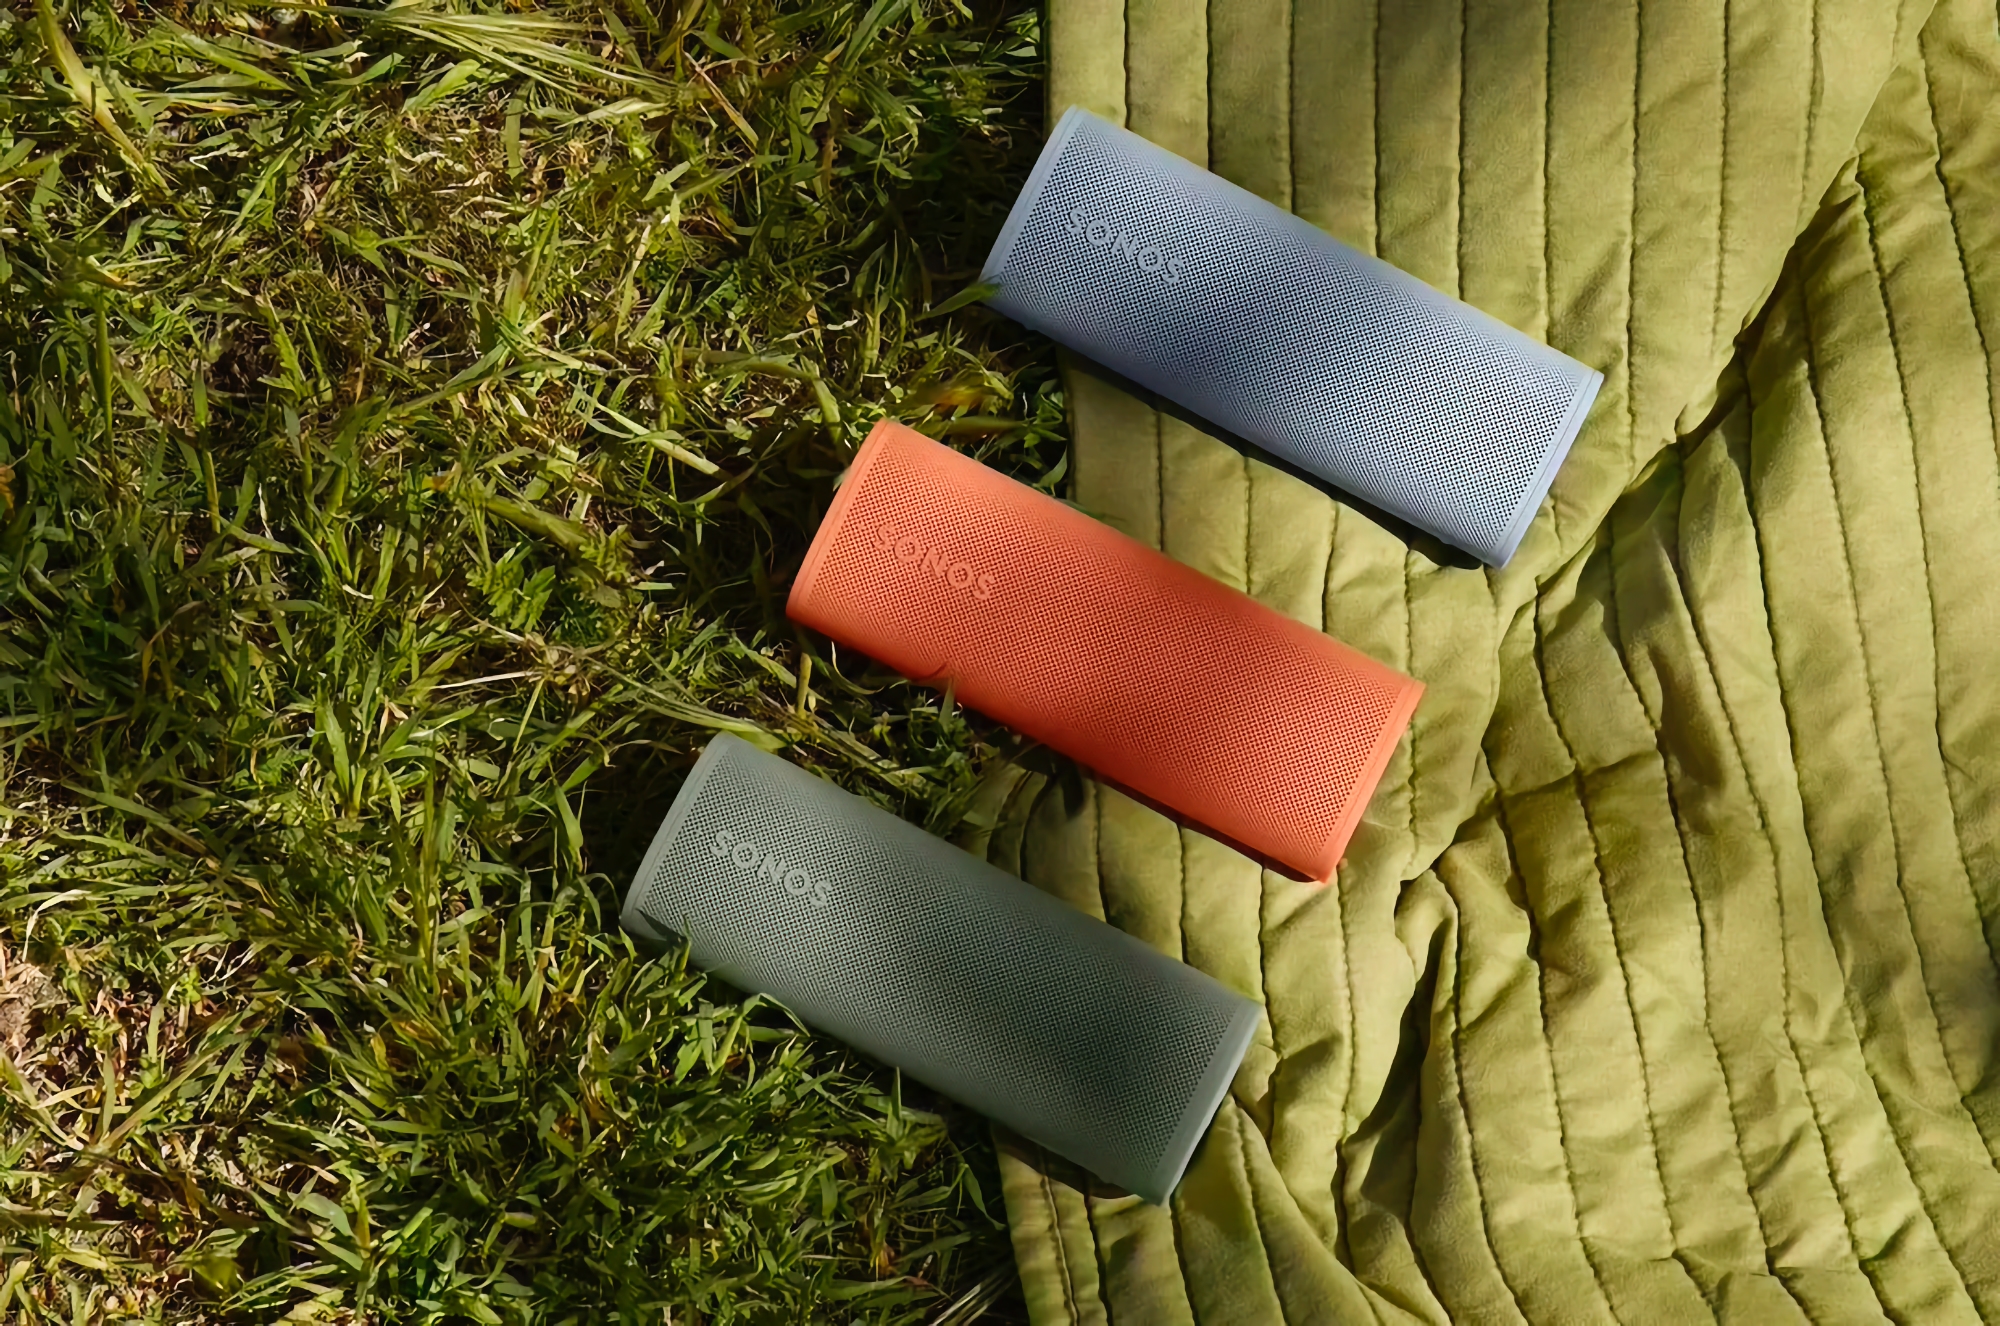 Sonos heeft de Roam 2 compacte luidspreker onthuld met een batterijduur tot 10 uur en een prijs van 179 dollar.